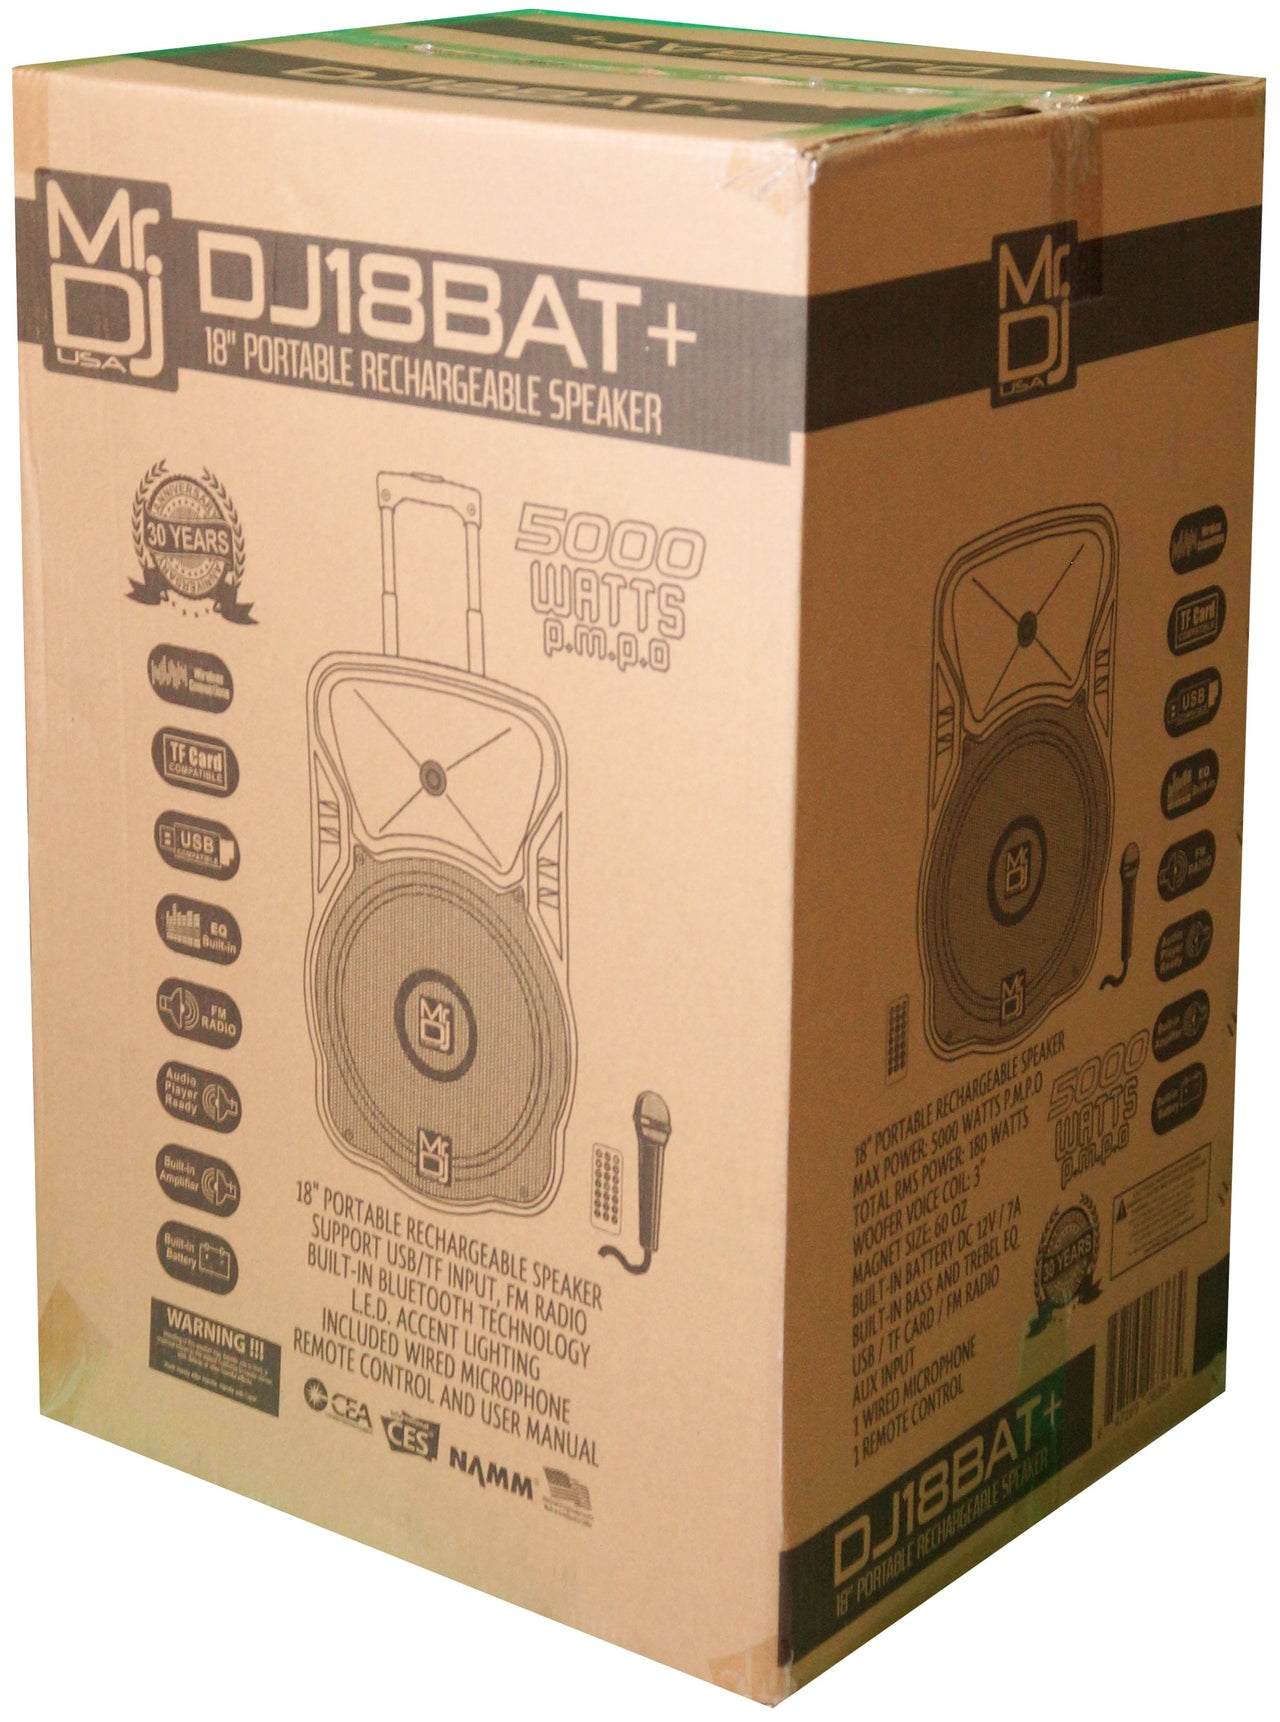 MR DJ DJ18BAT+ 18" Portable Bluetooth Speaker